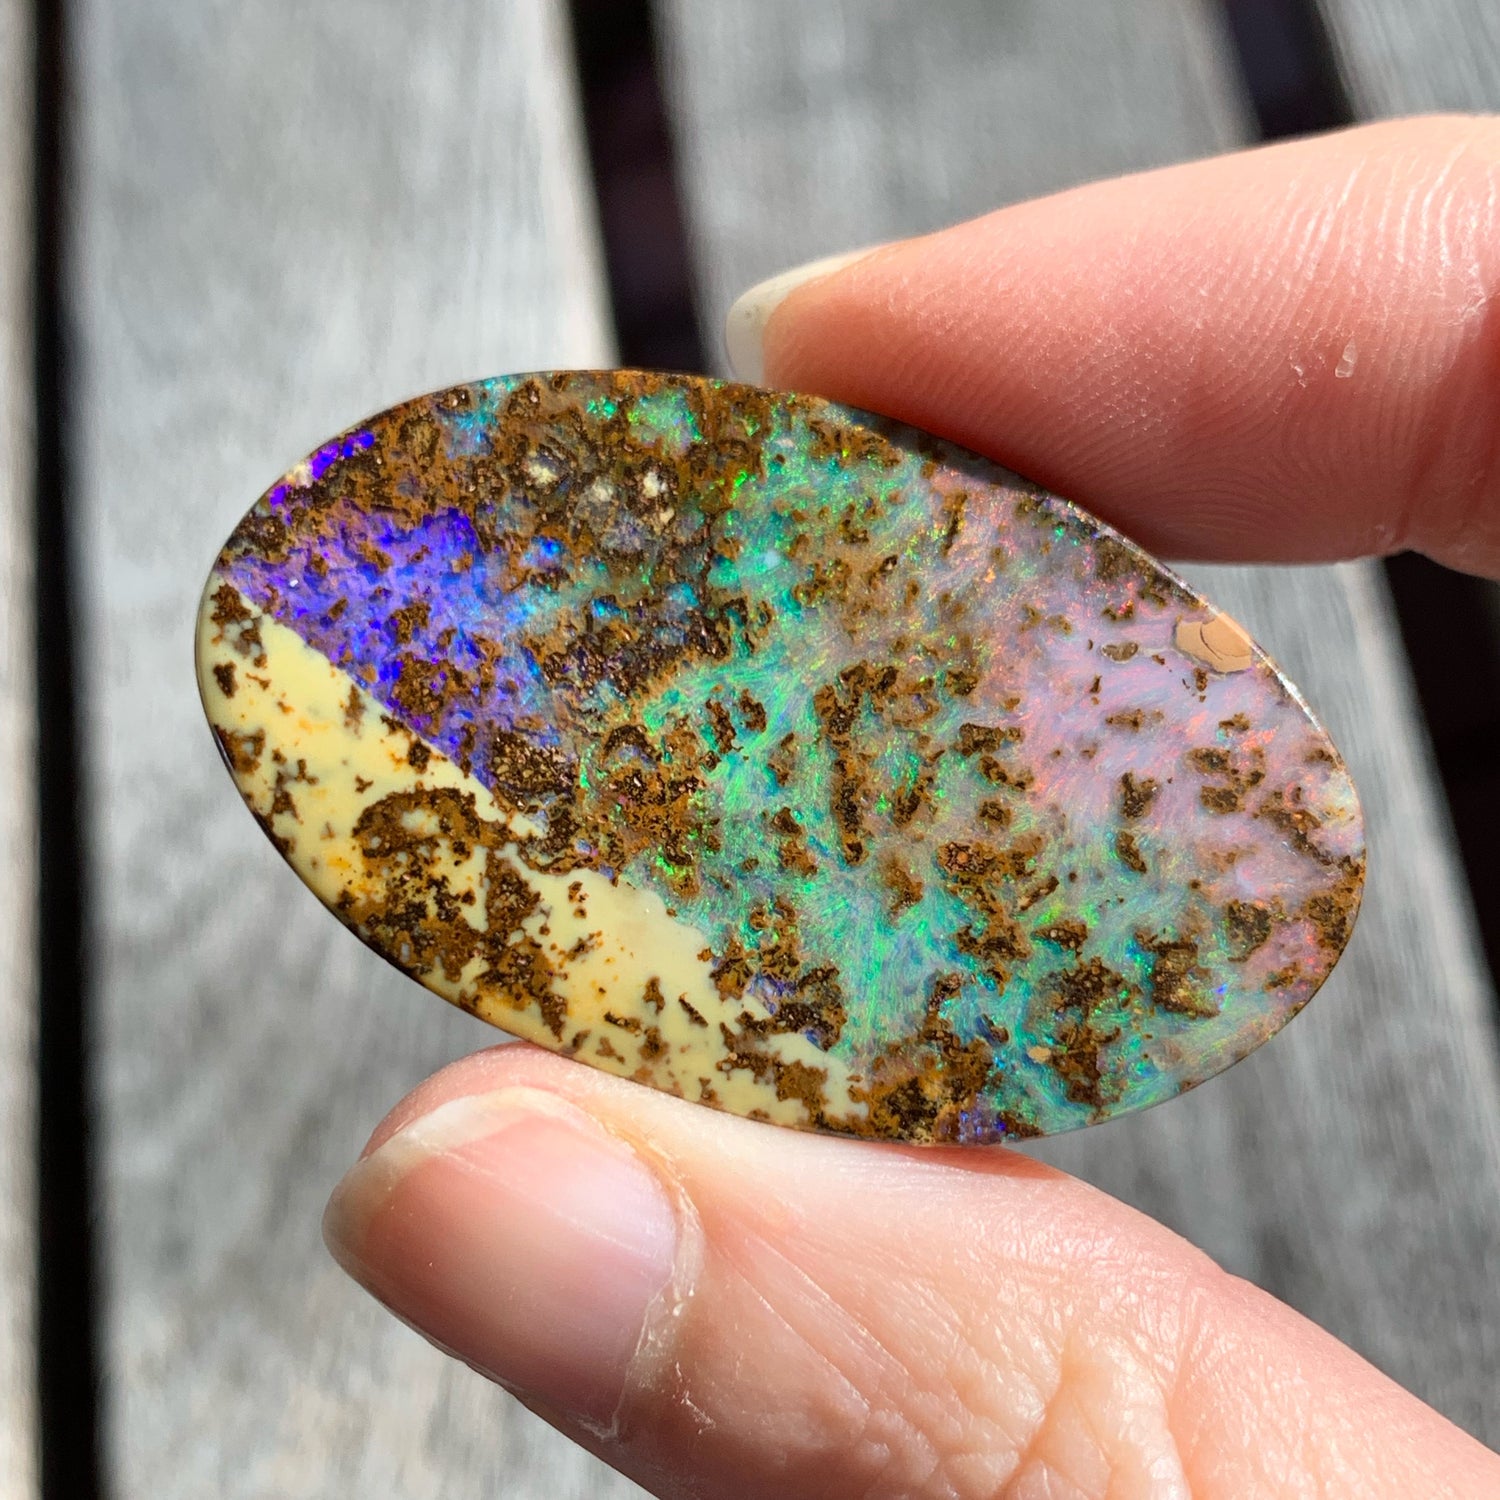 Magical matrix opals